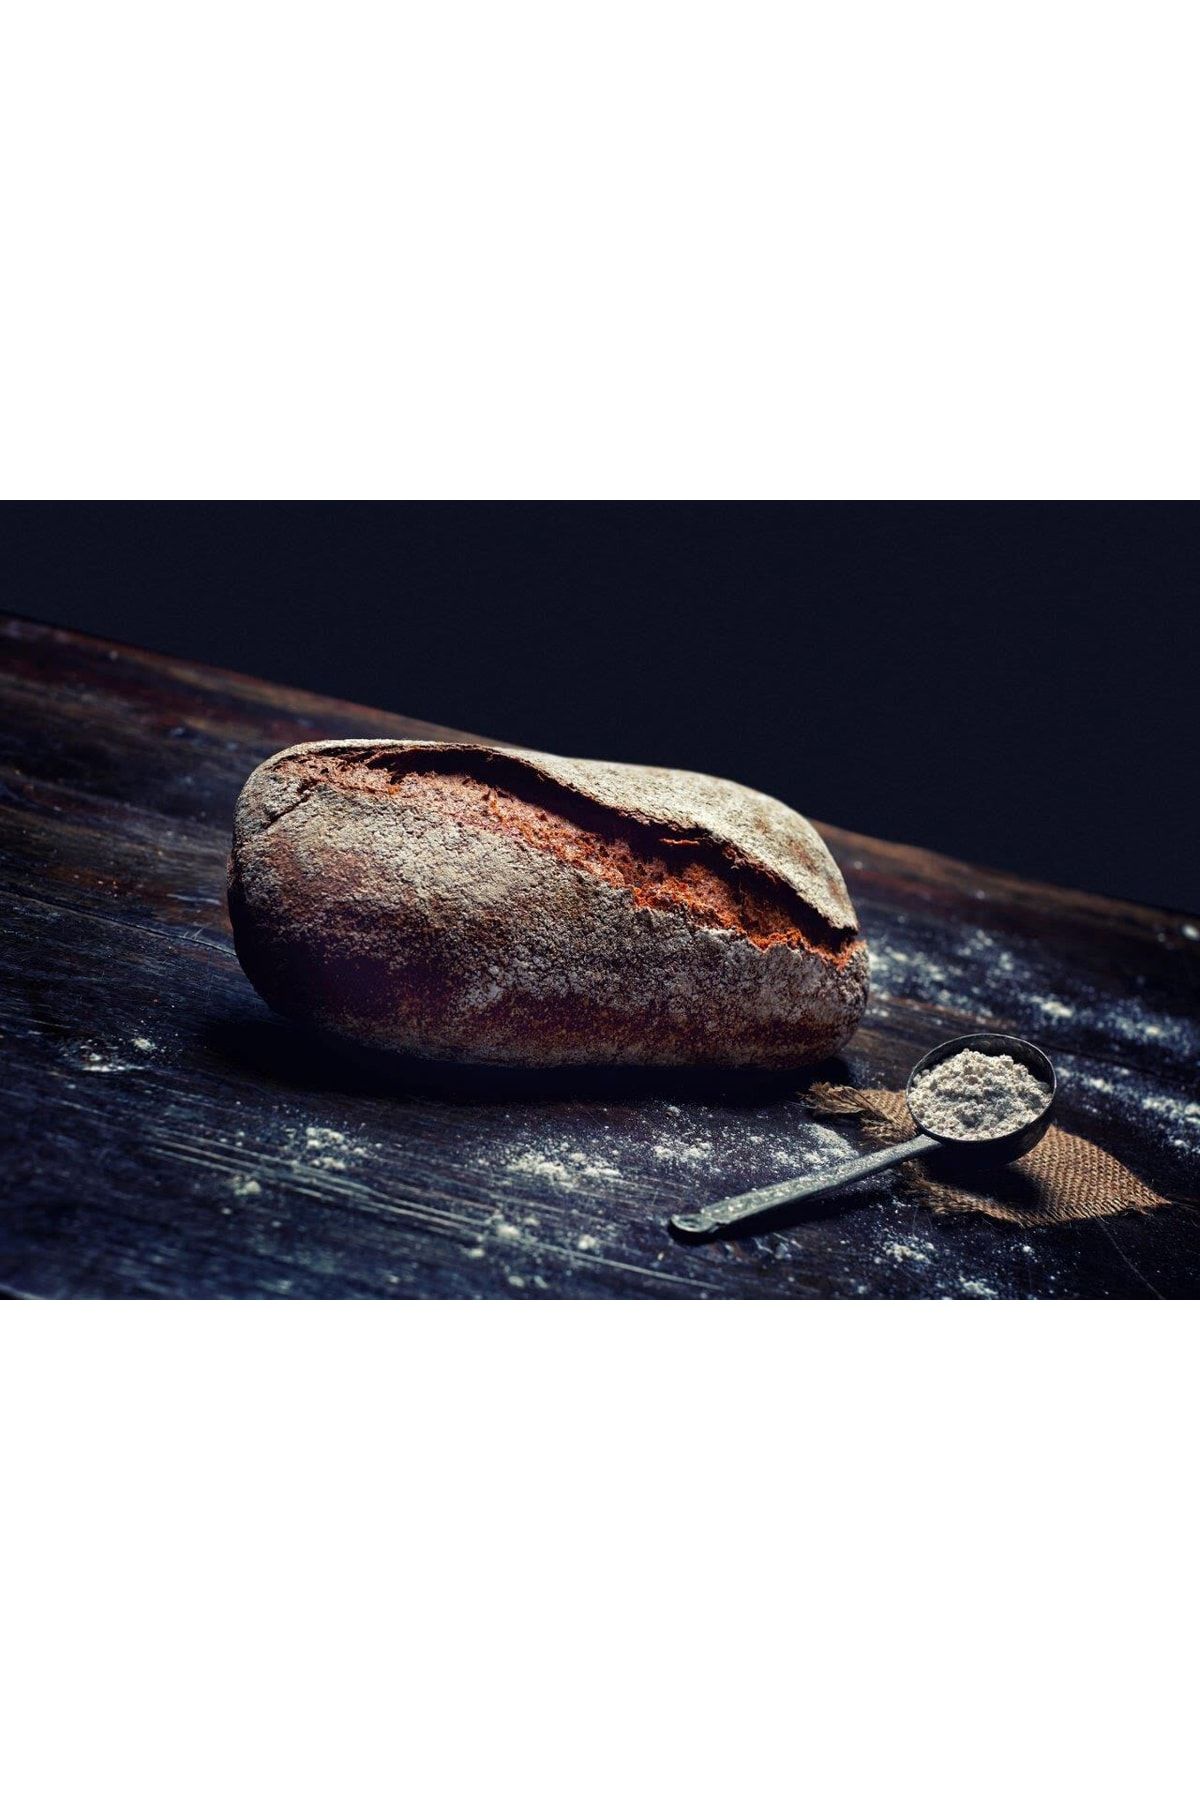 240derece Ekşi Mayalı Tam Buğday Ekmeği 650 gr